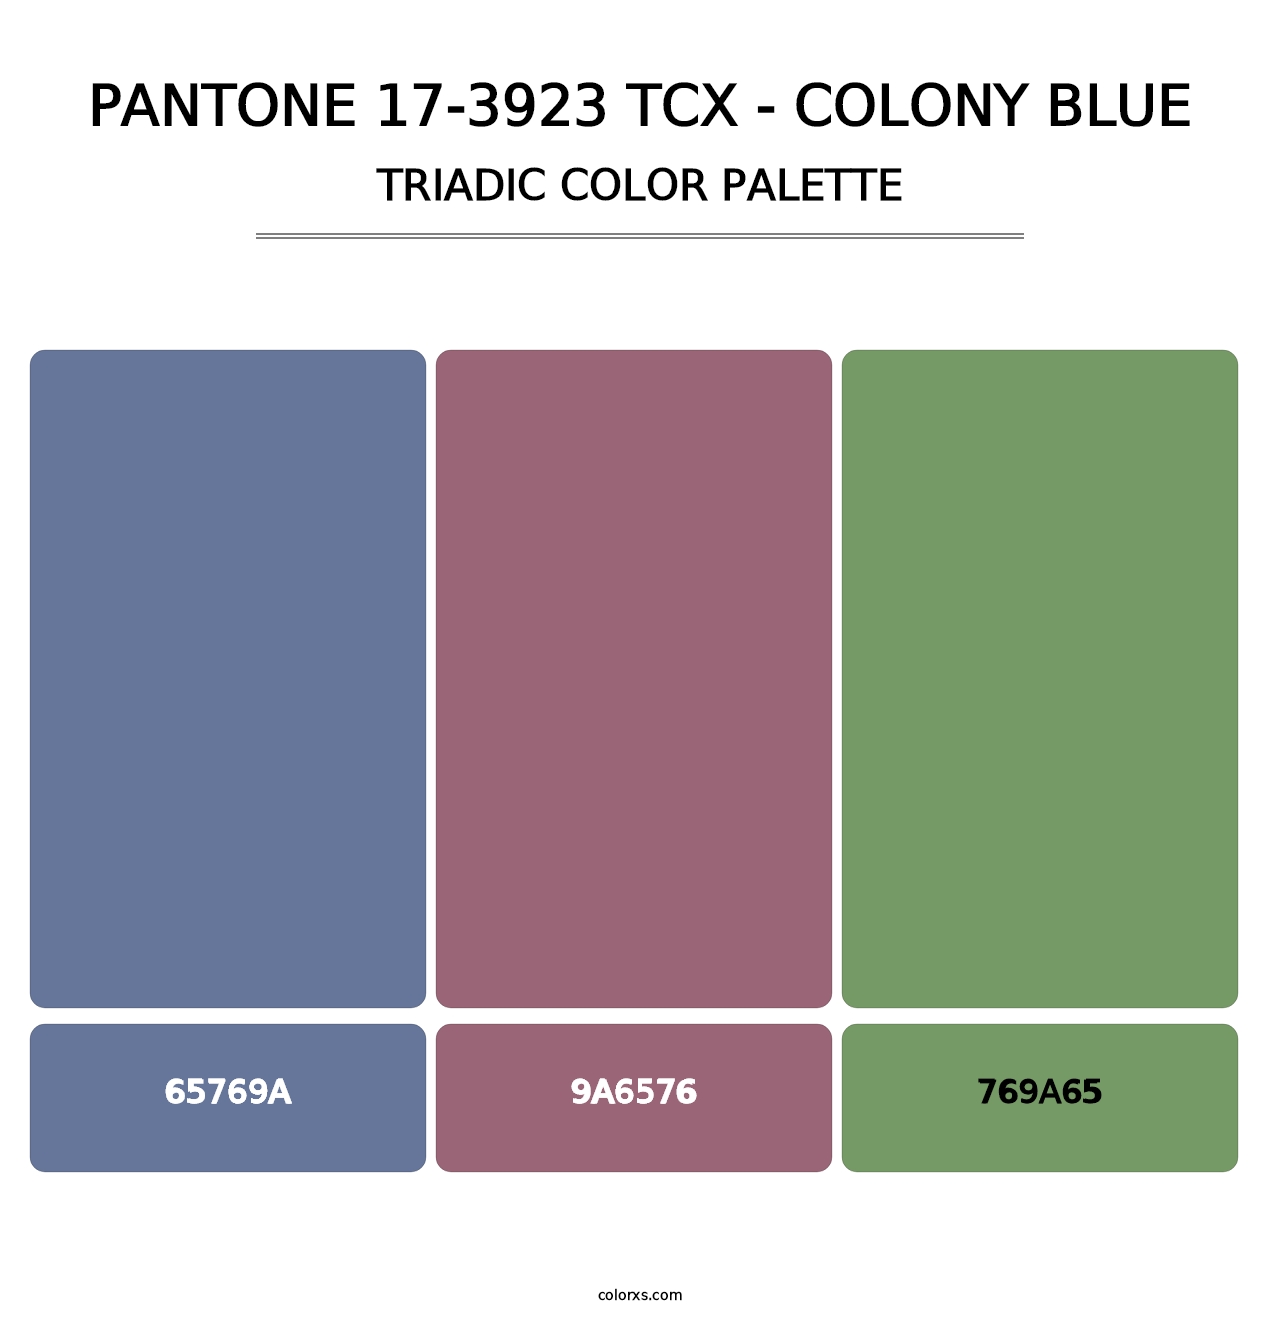 PANTONE 17-3923 TCX - Colony Blue - Triadic Color Palette